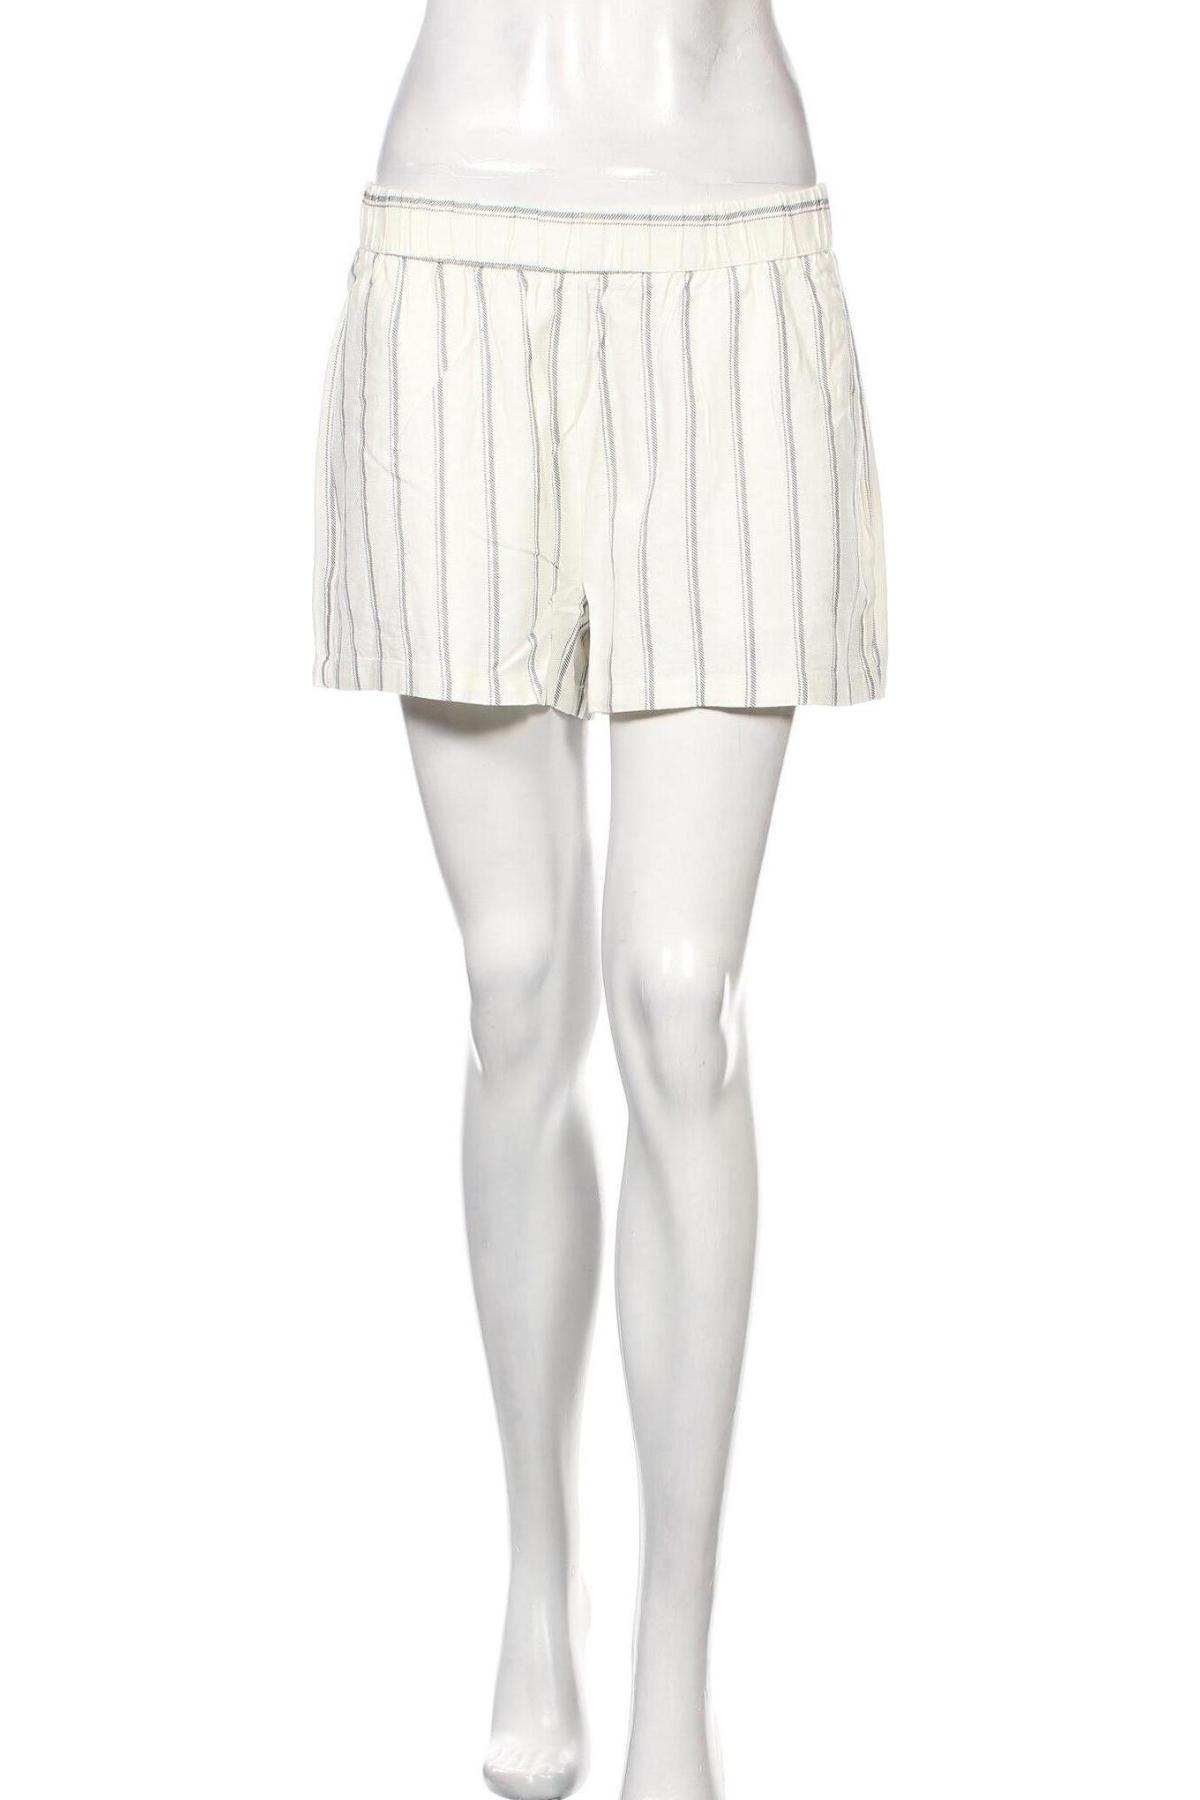 Γυναικείο κοντό παντελόνι Vero Moda, Μέγεθος L, Χρώμα Λευκό, 55% λινό, 45% βισκόζη, Τιμή 15,20 €